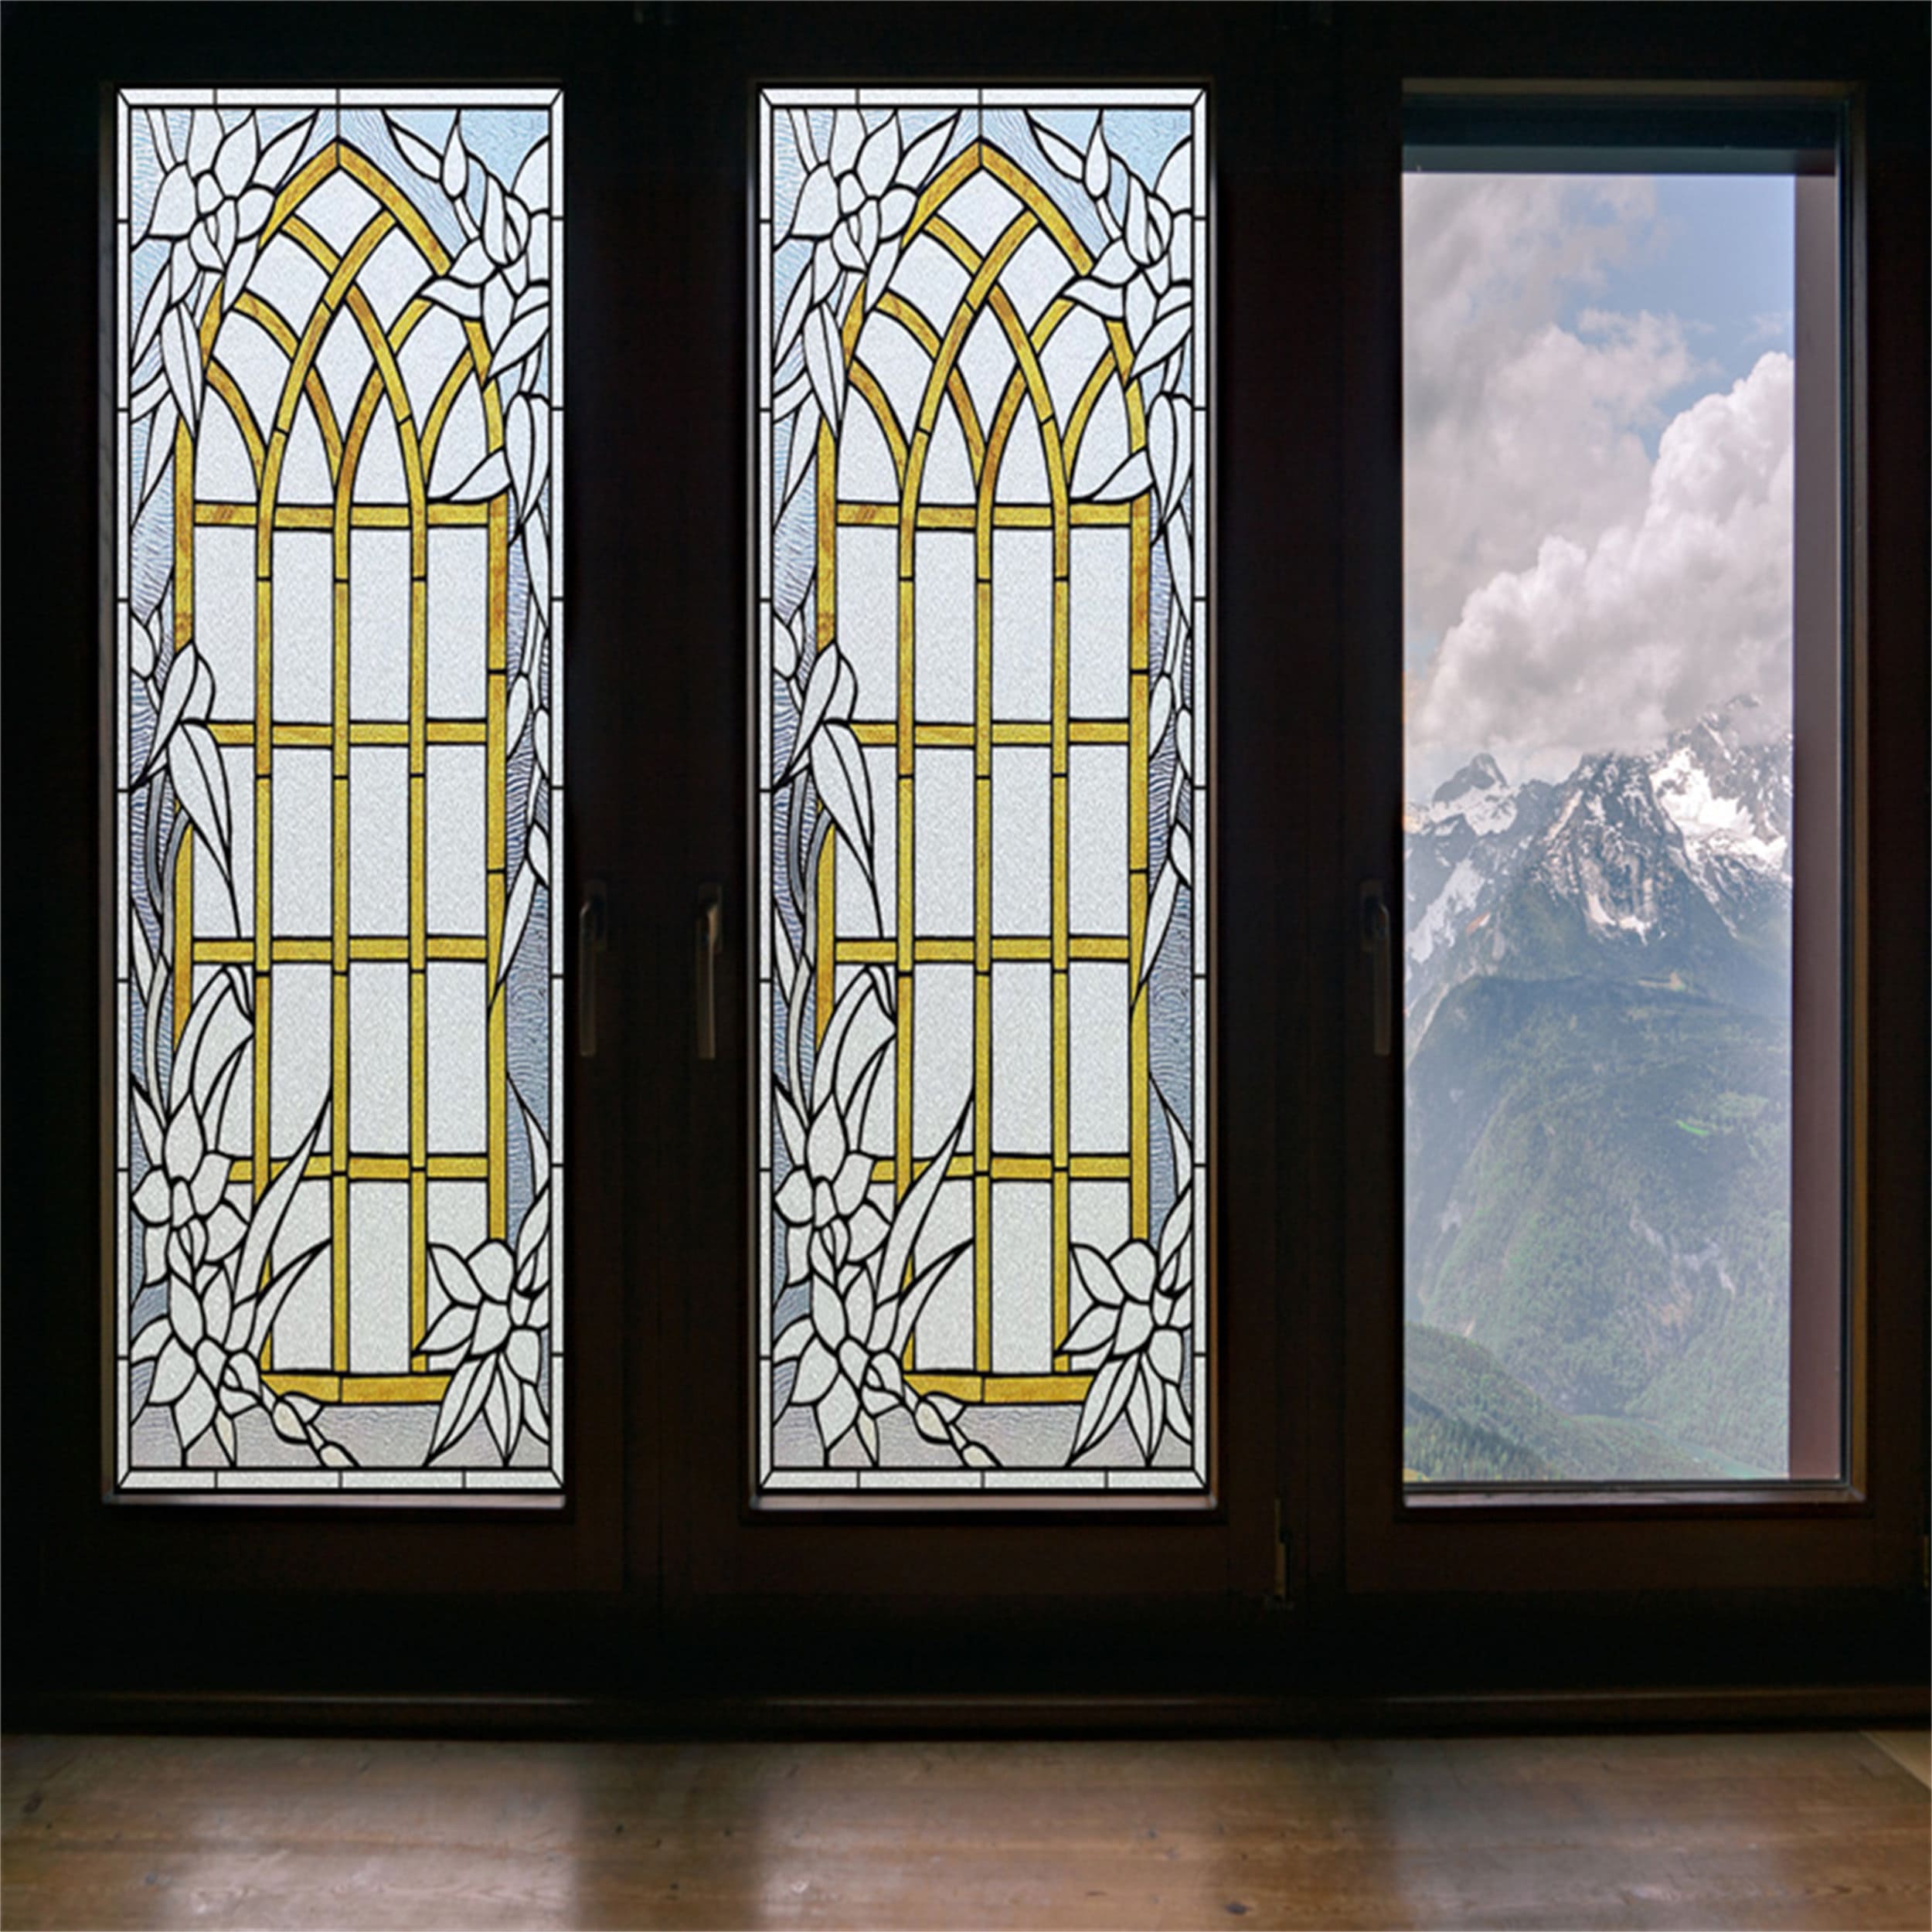 Einweg-Fenster folie Sonnenschutz glas Sichtschutz folie reflektierende  Fenster abdeckungen Spiegel Glas aufkleber Wärme isolierung Wohnkultur